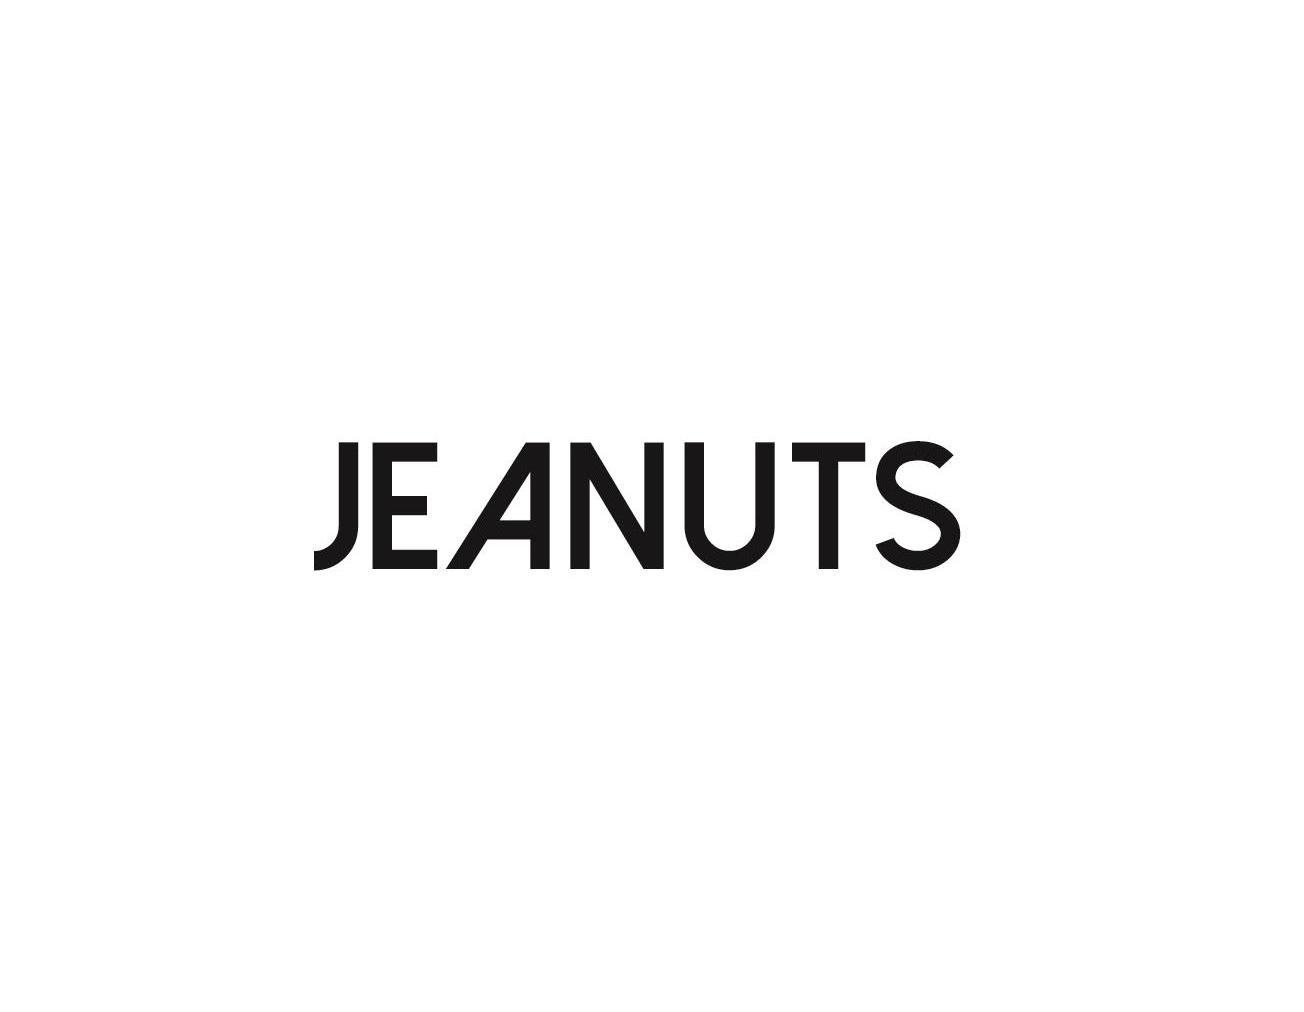 JEANUTS